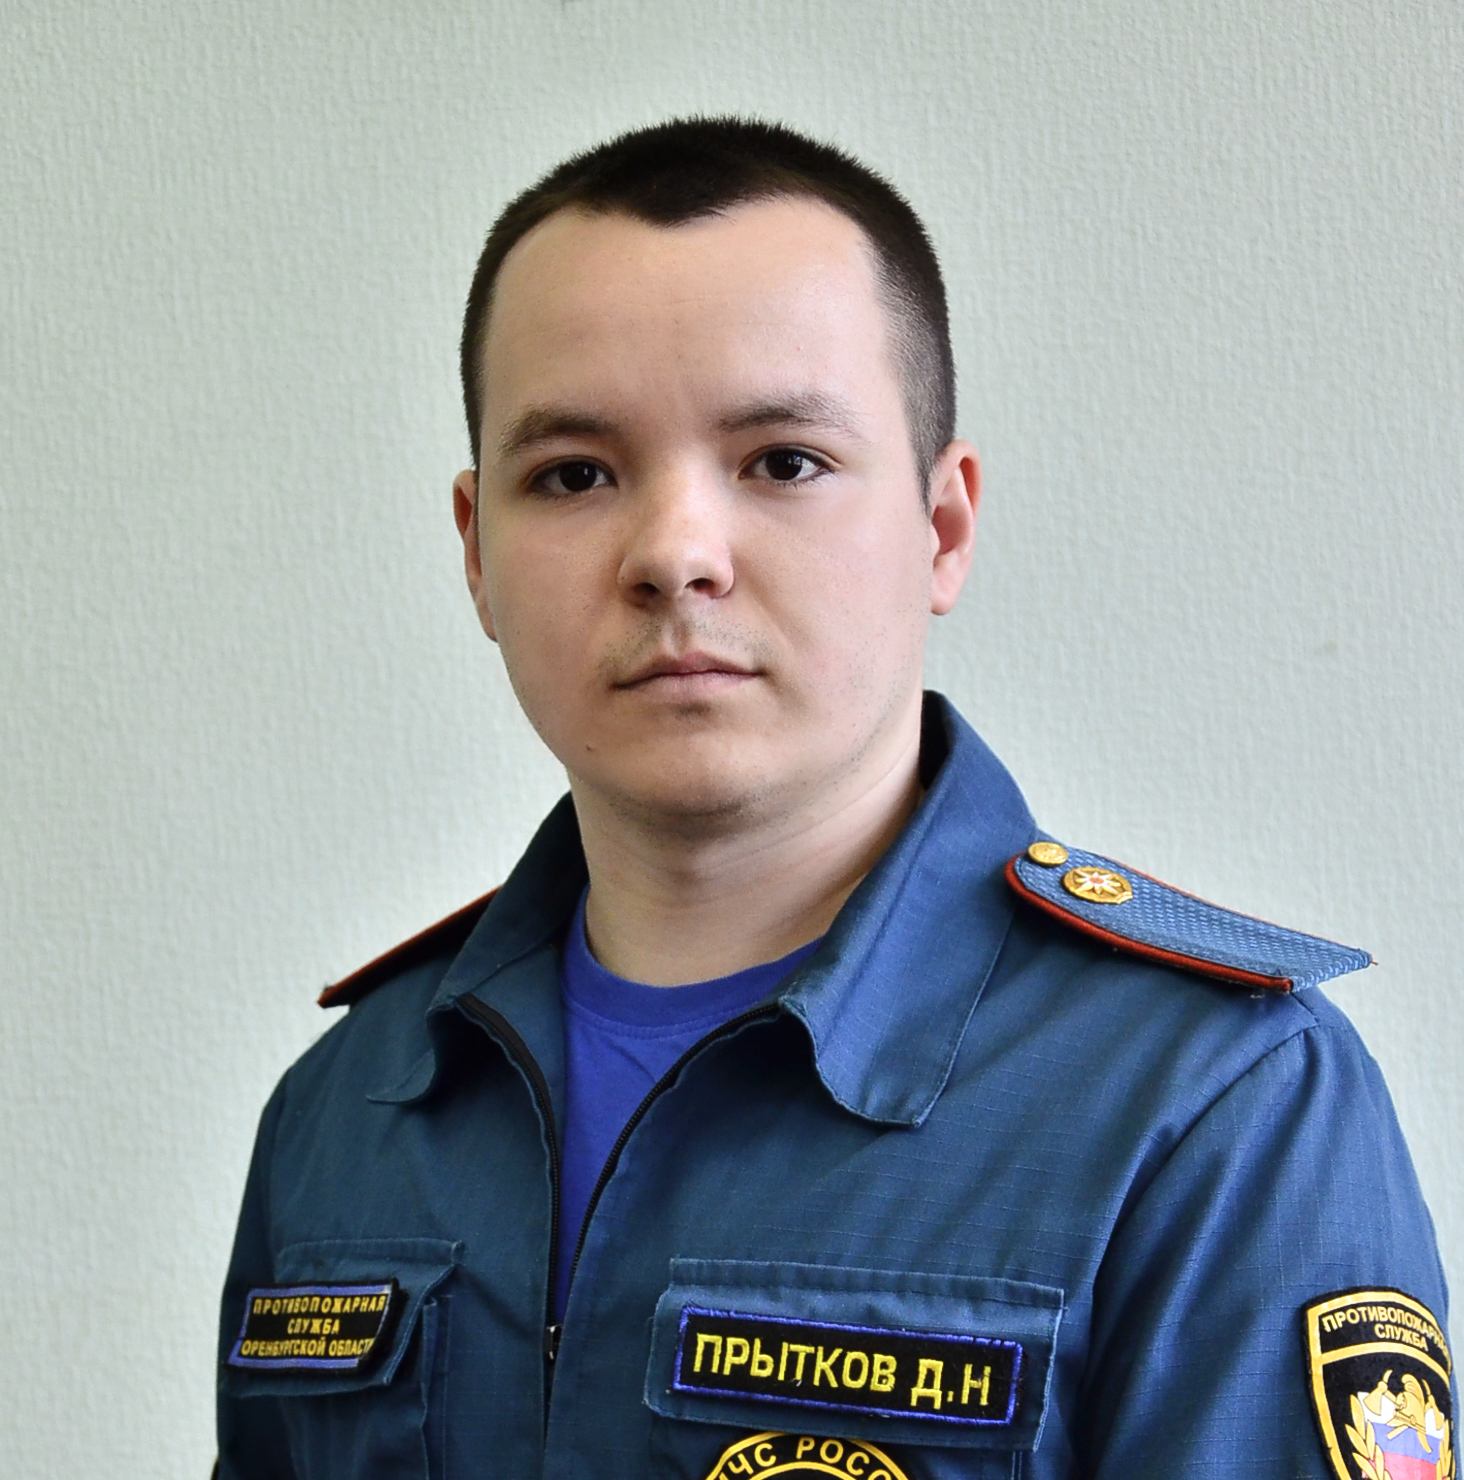 Прытков Дмитрий Николаевич.